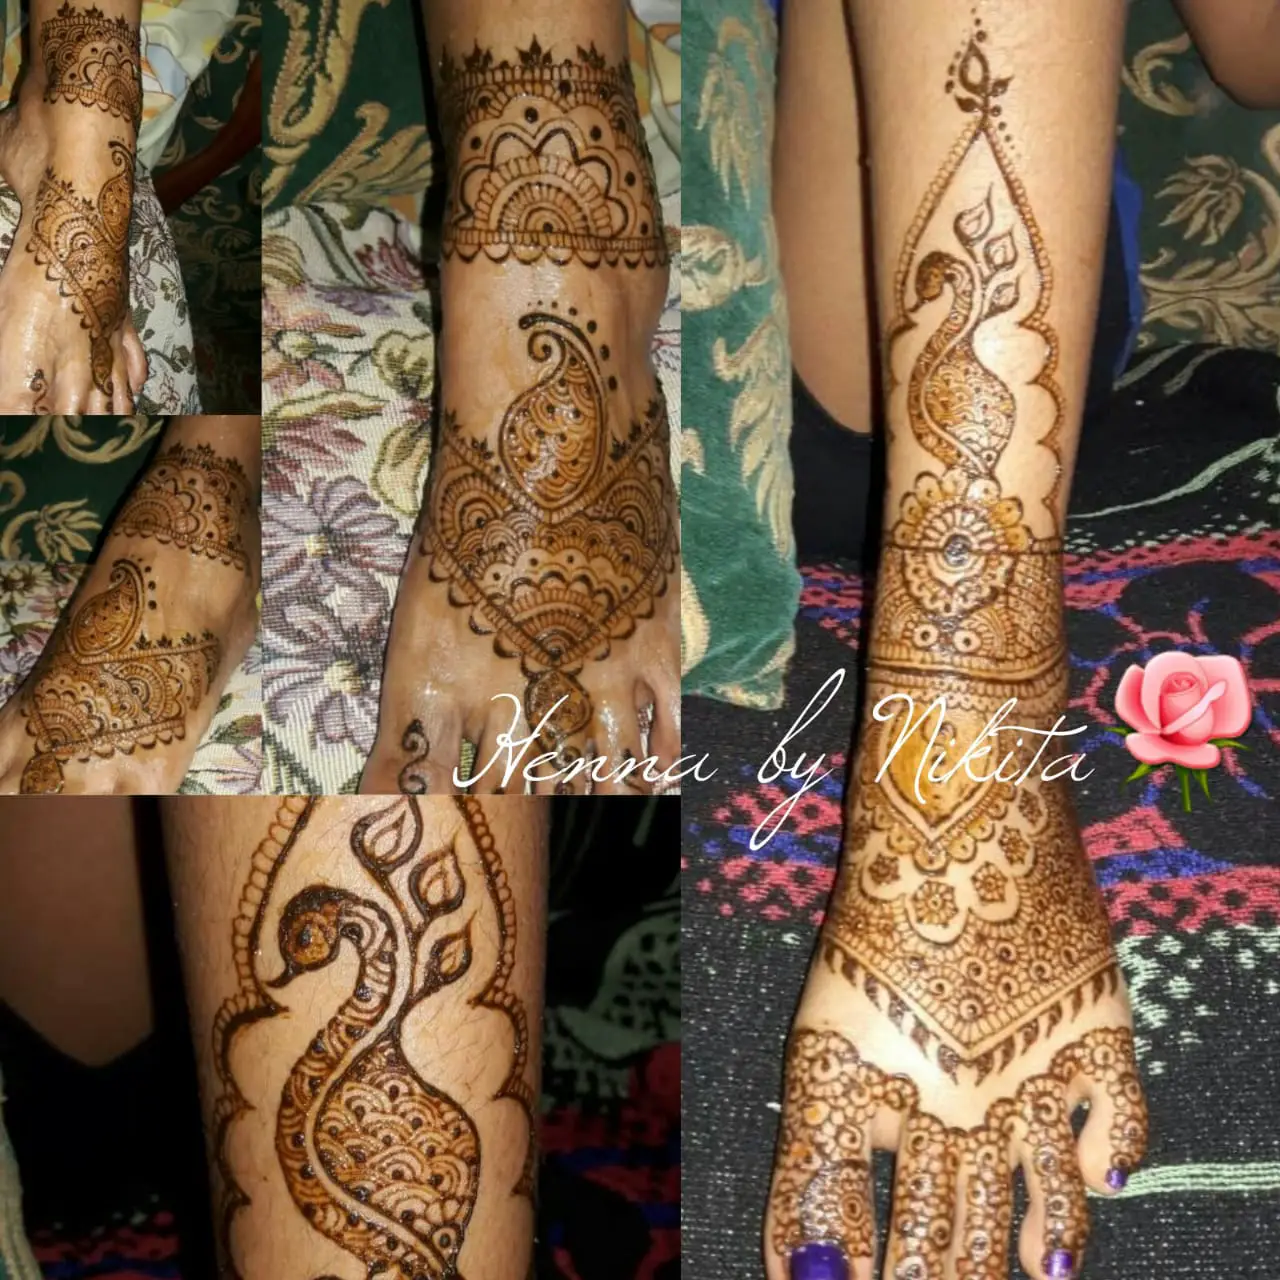 Henna by Nikita